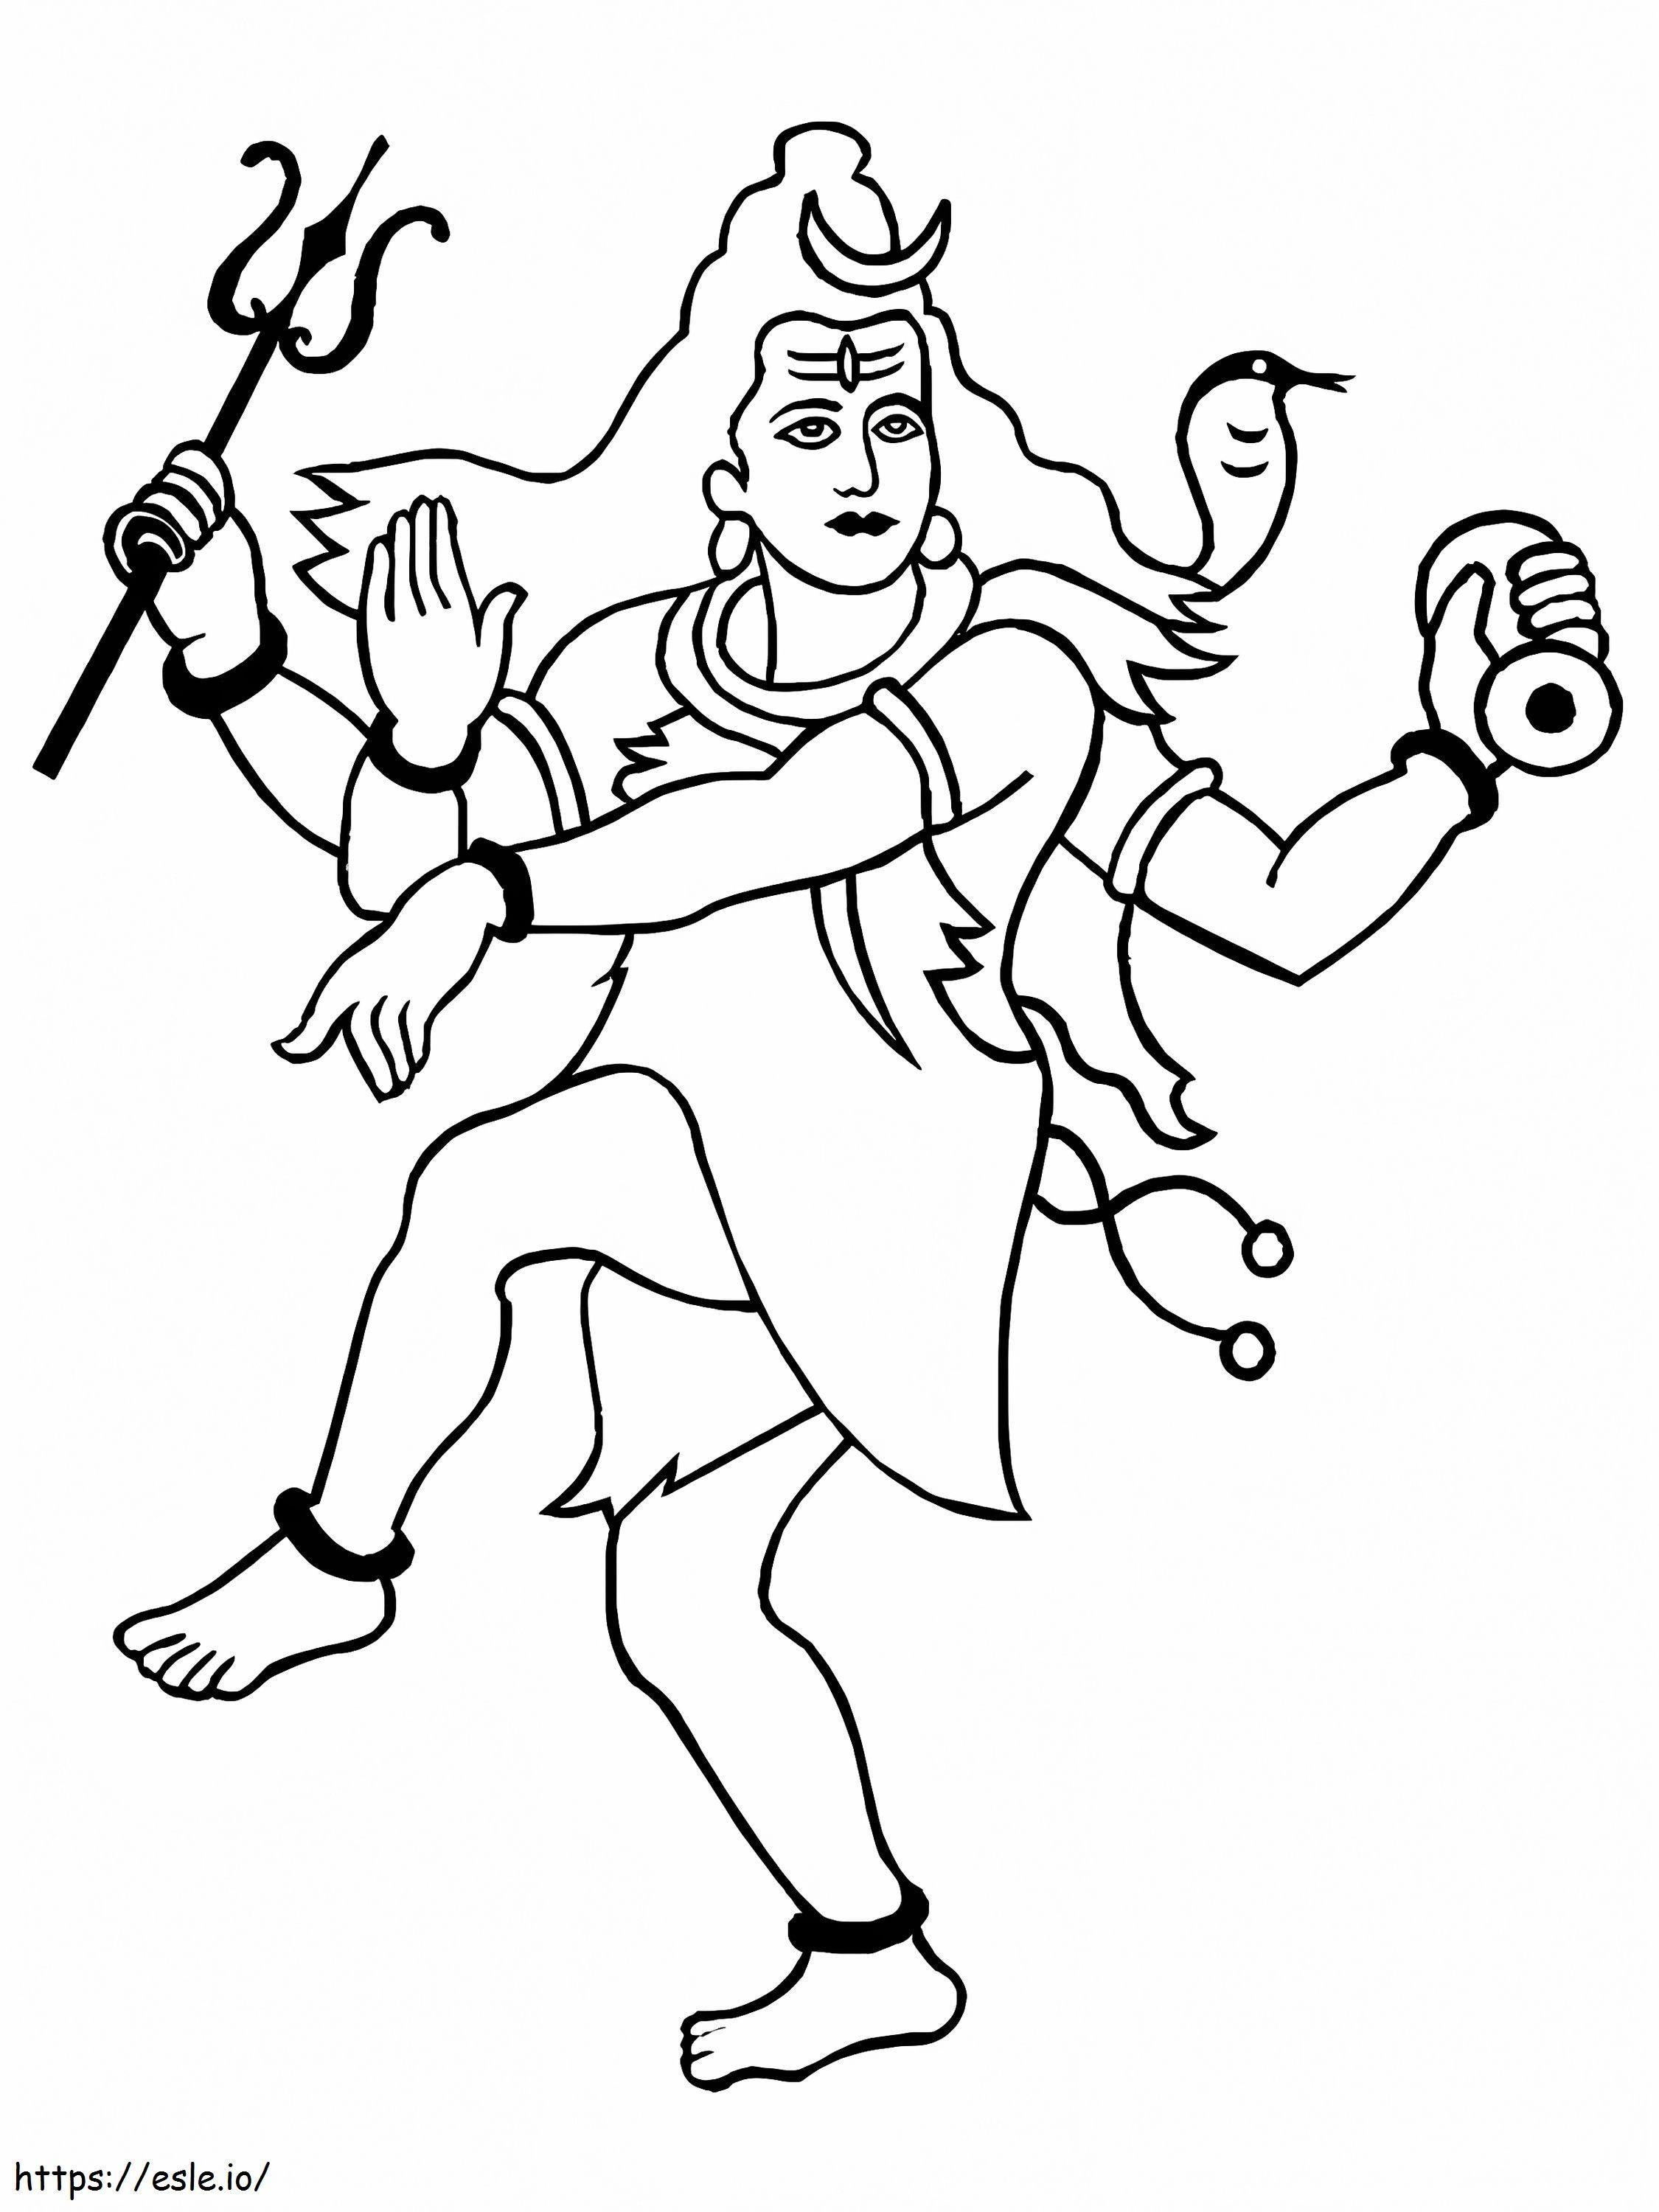 Maha Shivaratri coloring page